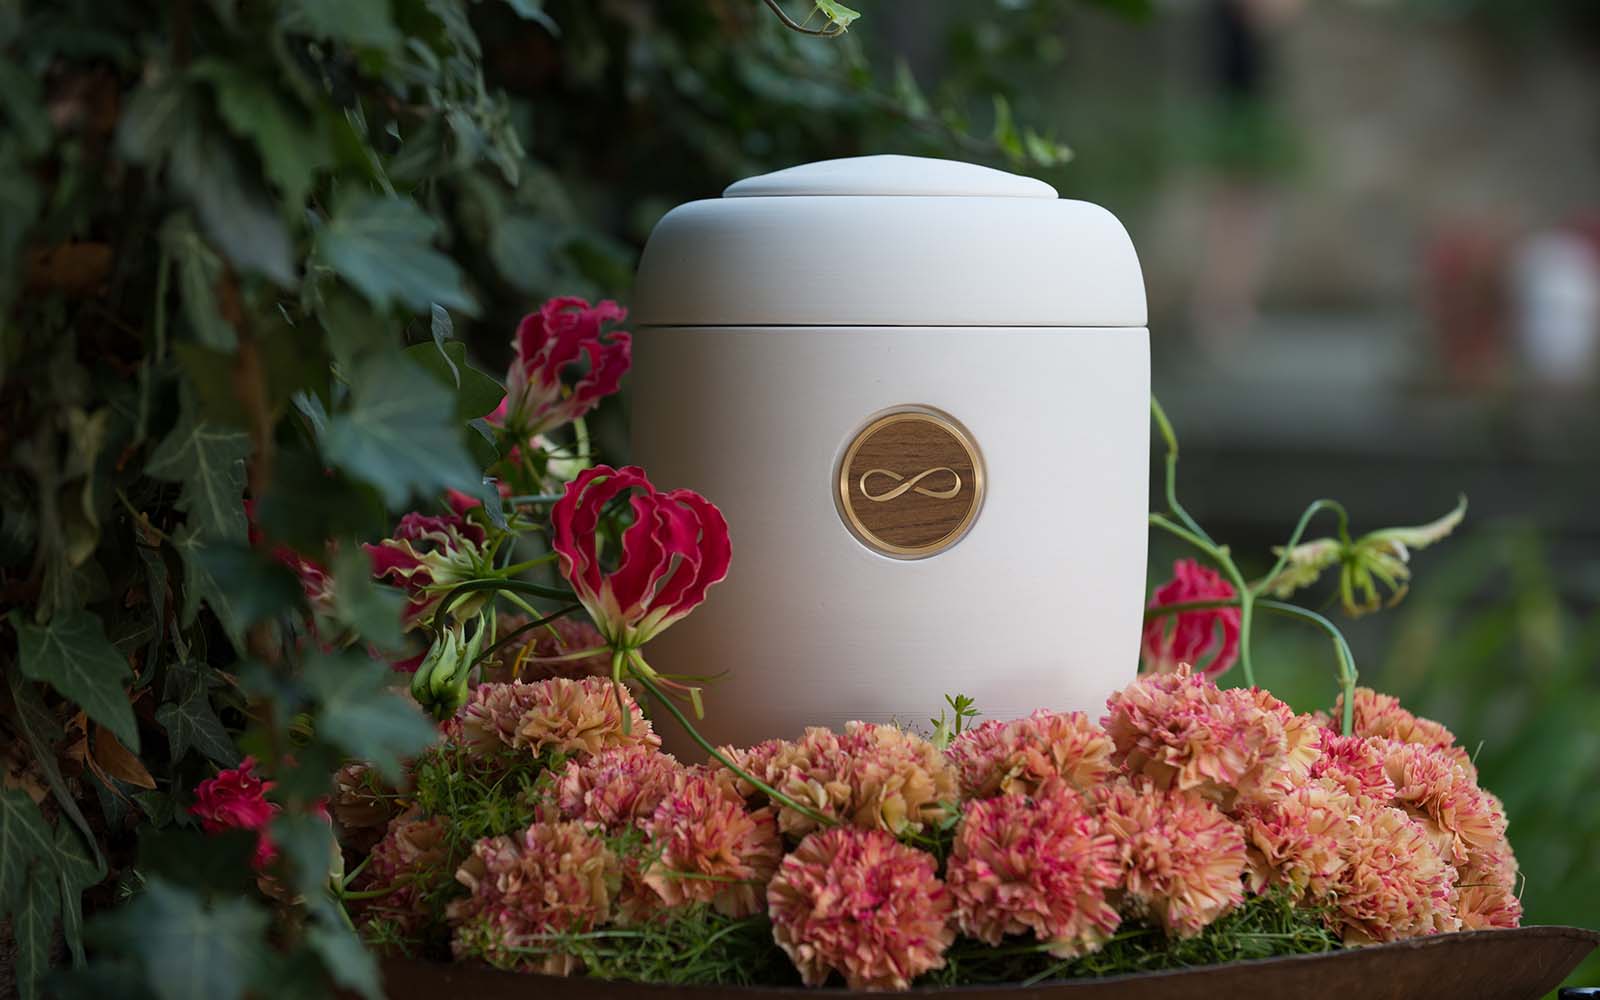 Cremefarbene Urne mit glänzendem Messing-Holz-Medaillon, eingravierte Unendlichkeits-8, umgeben von rosa Blumenkranz.